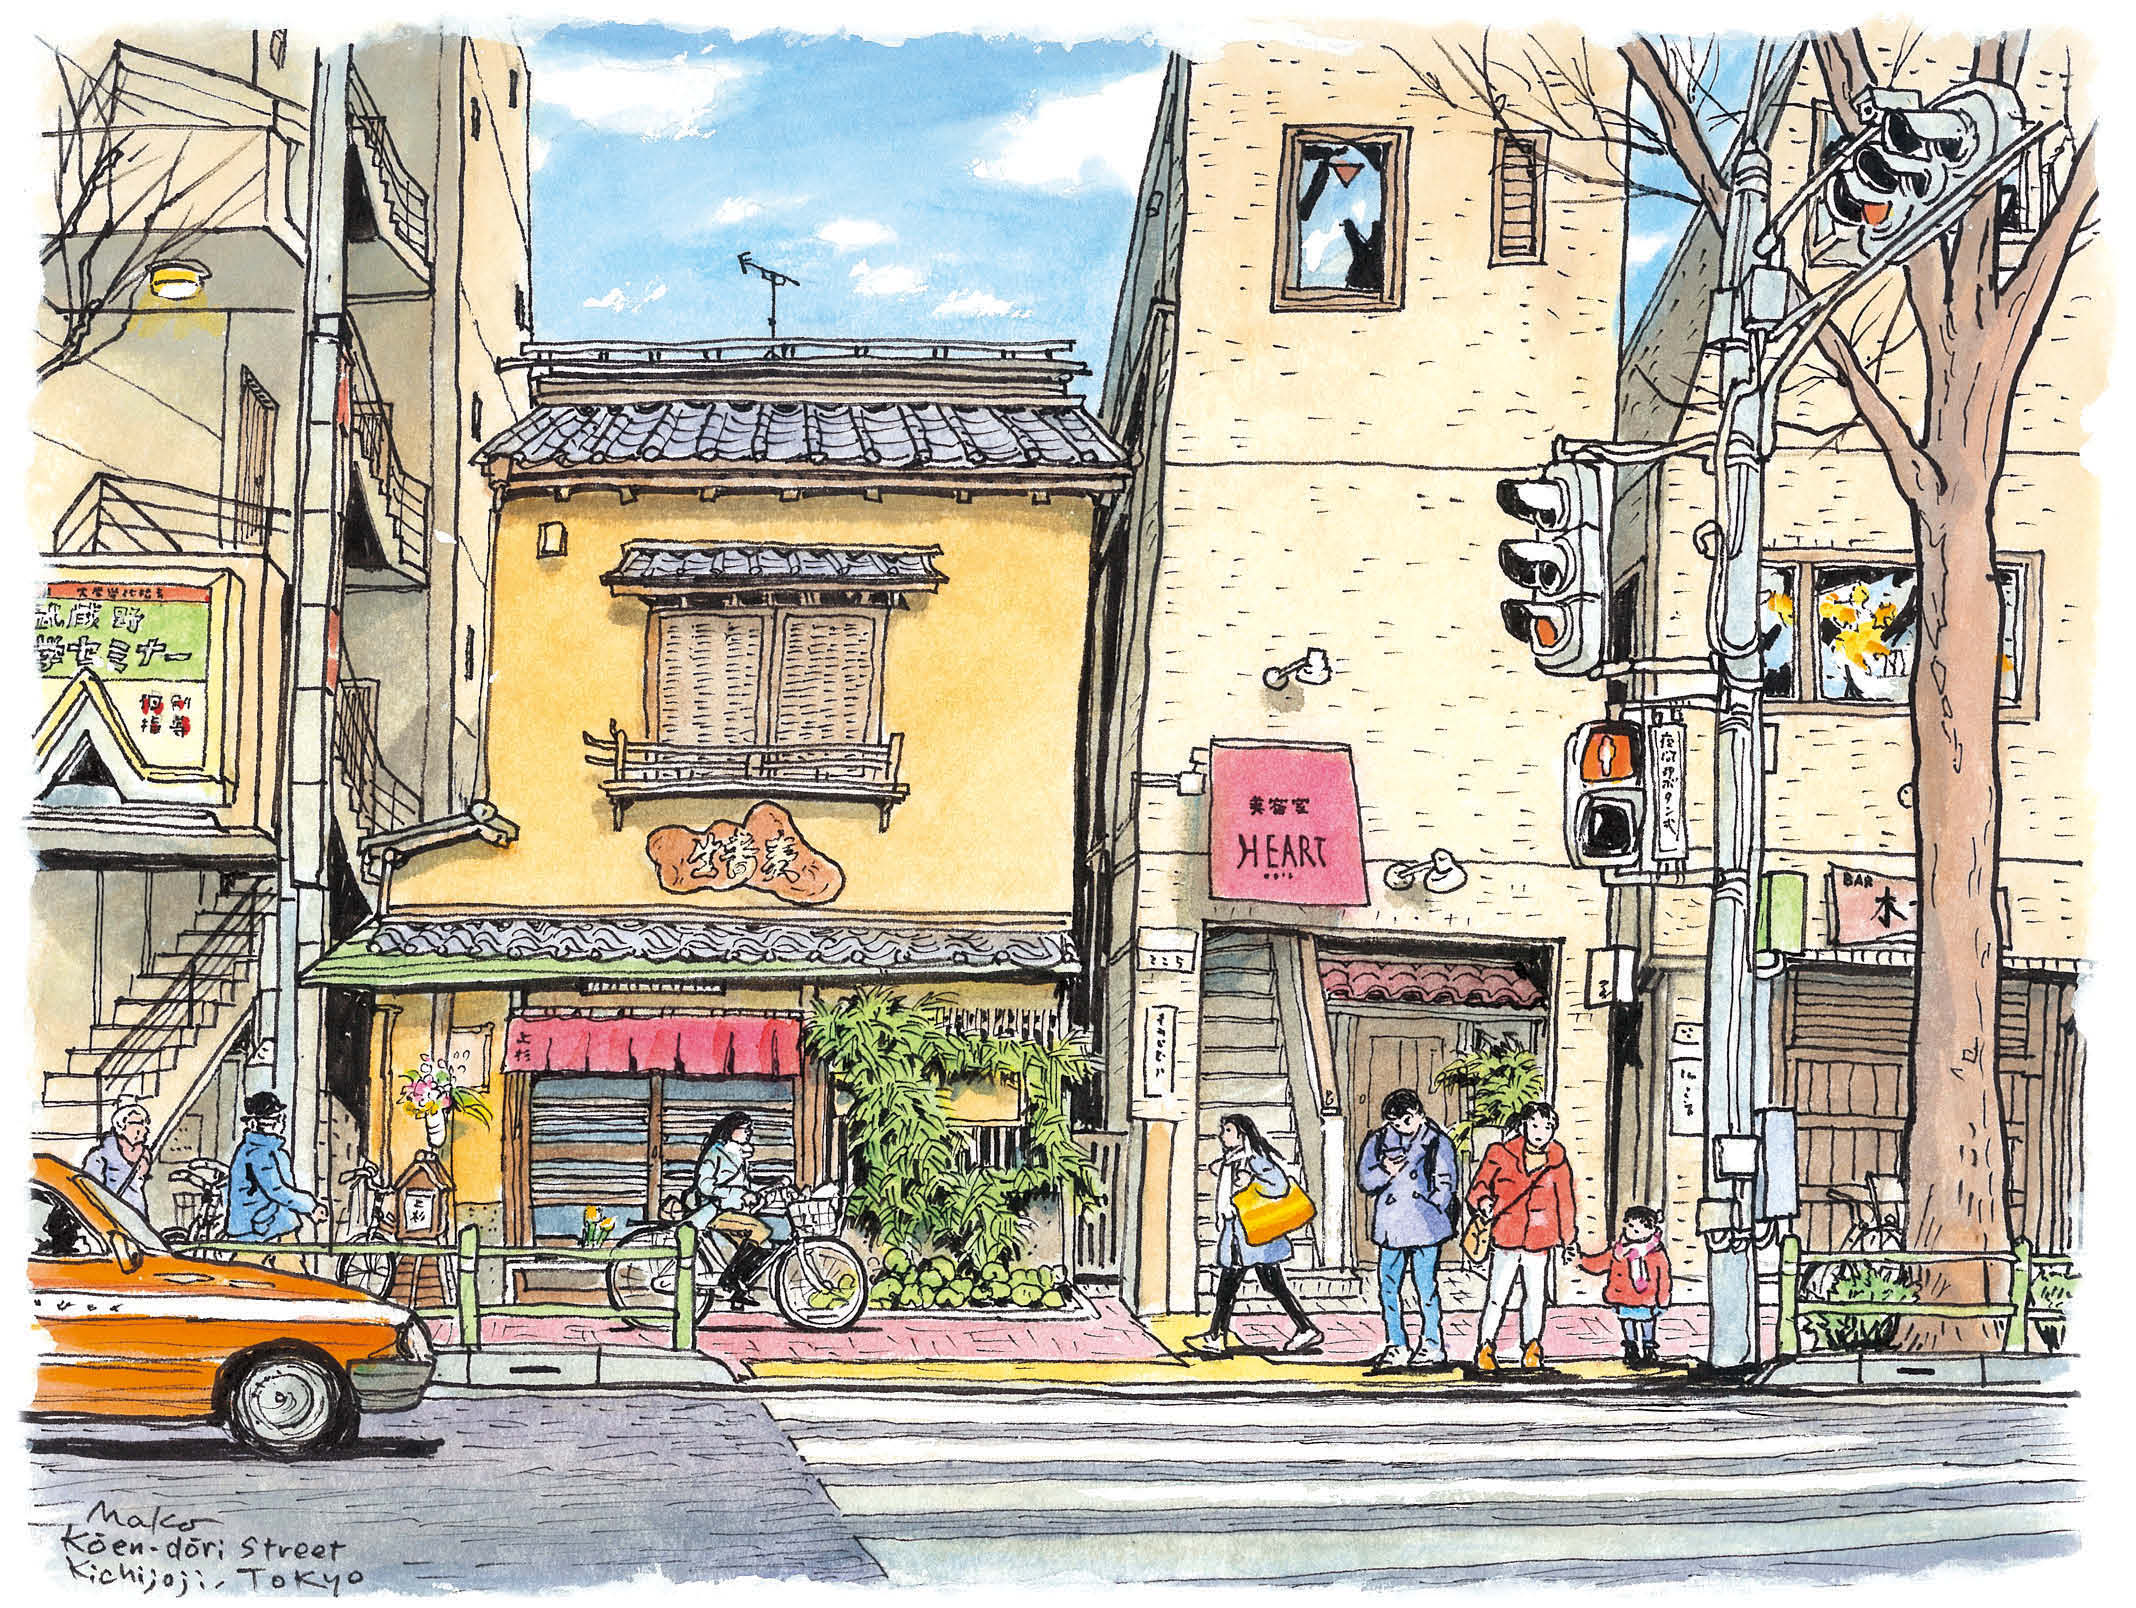 いつもの散歩コース 吉祥寺公園通りを描く 永沢まことの街歩きスケッチ入門 第10回 Pictures